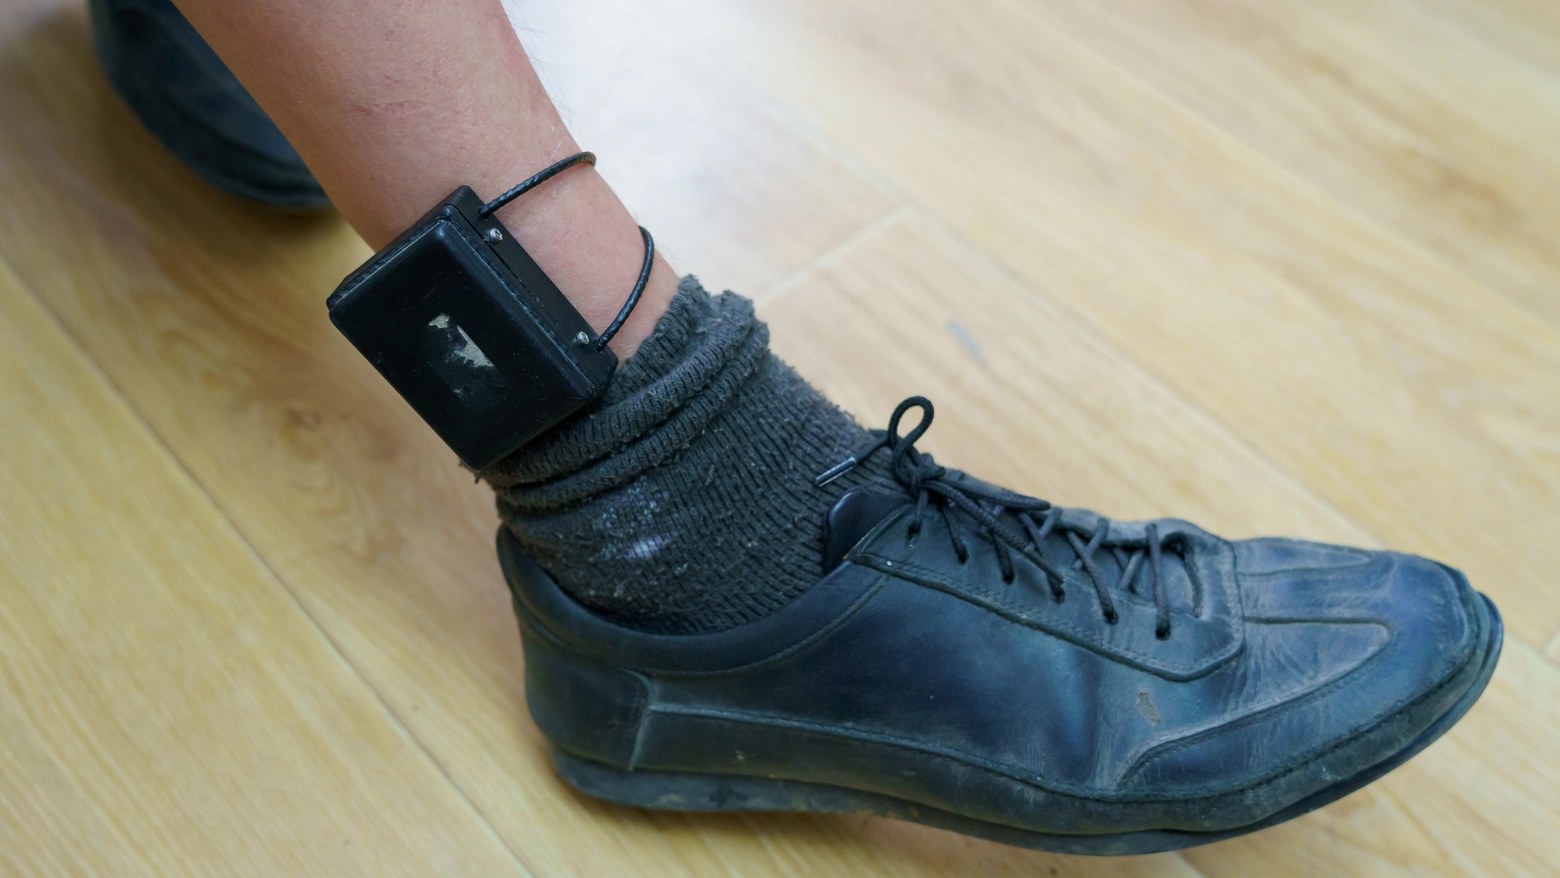 Il 'braccialetto elettronico' usato per gli arresti domiciliari: l'evaso è riuscito a toglierselo e a fuggire